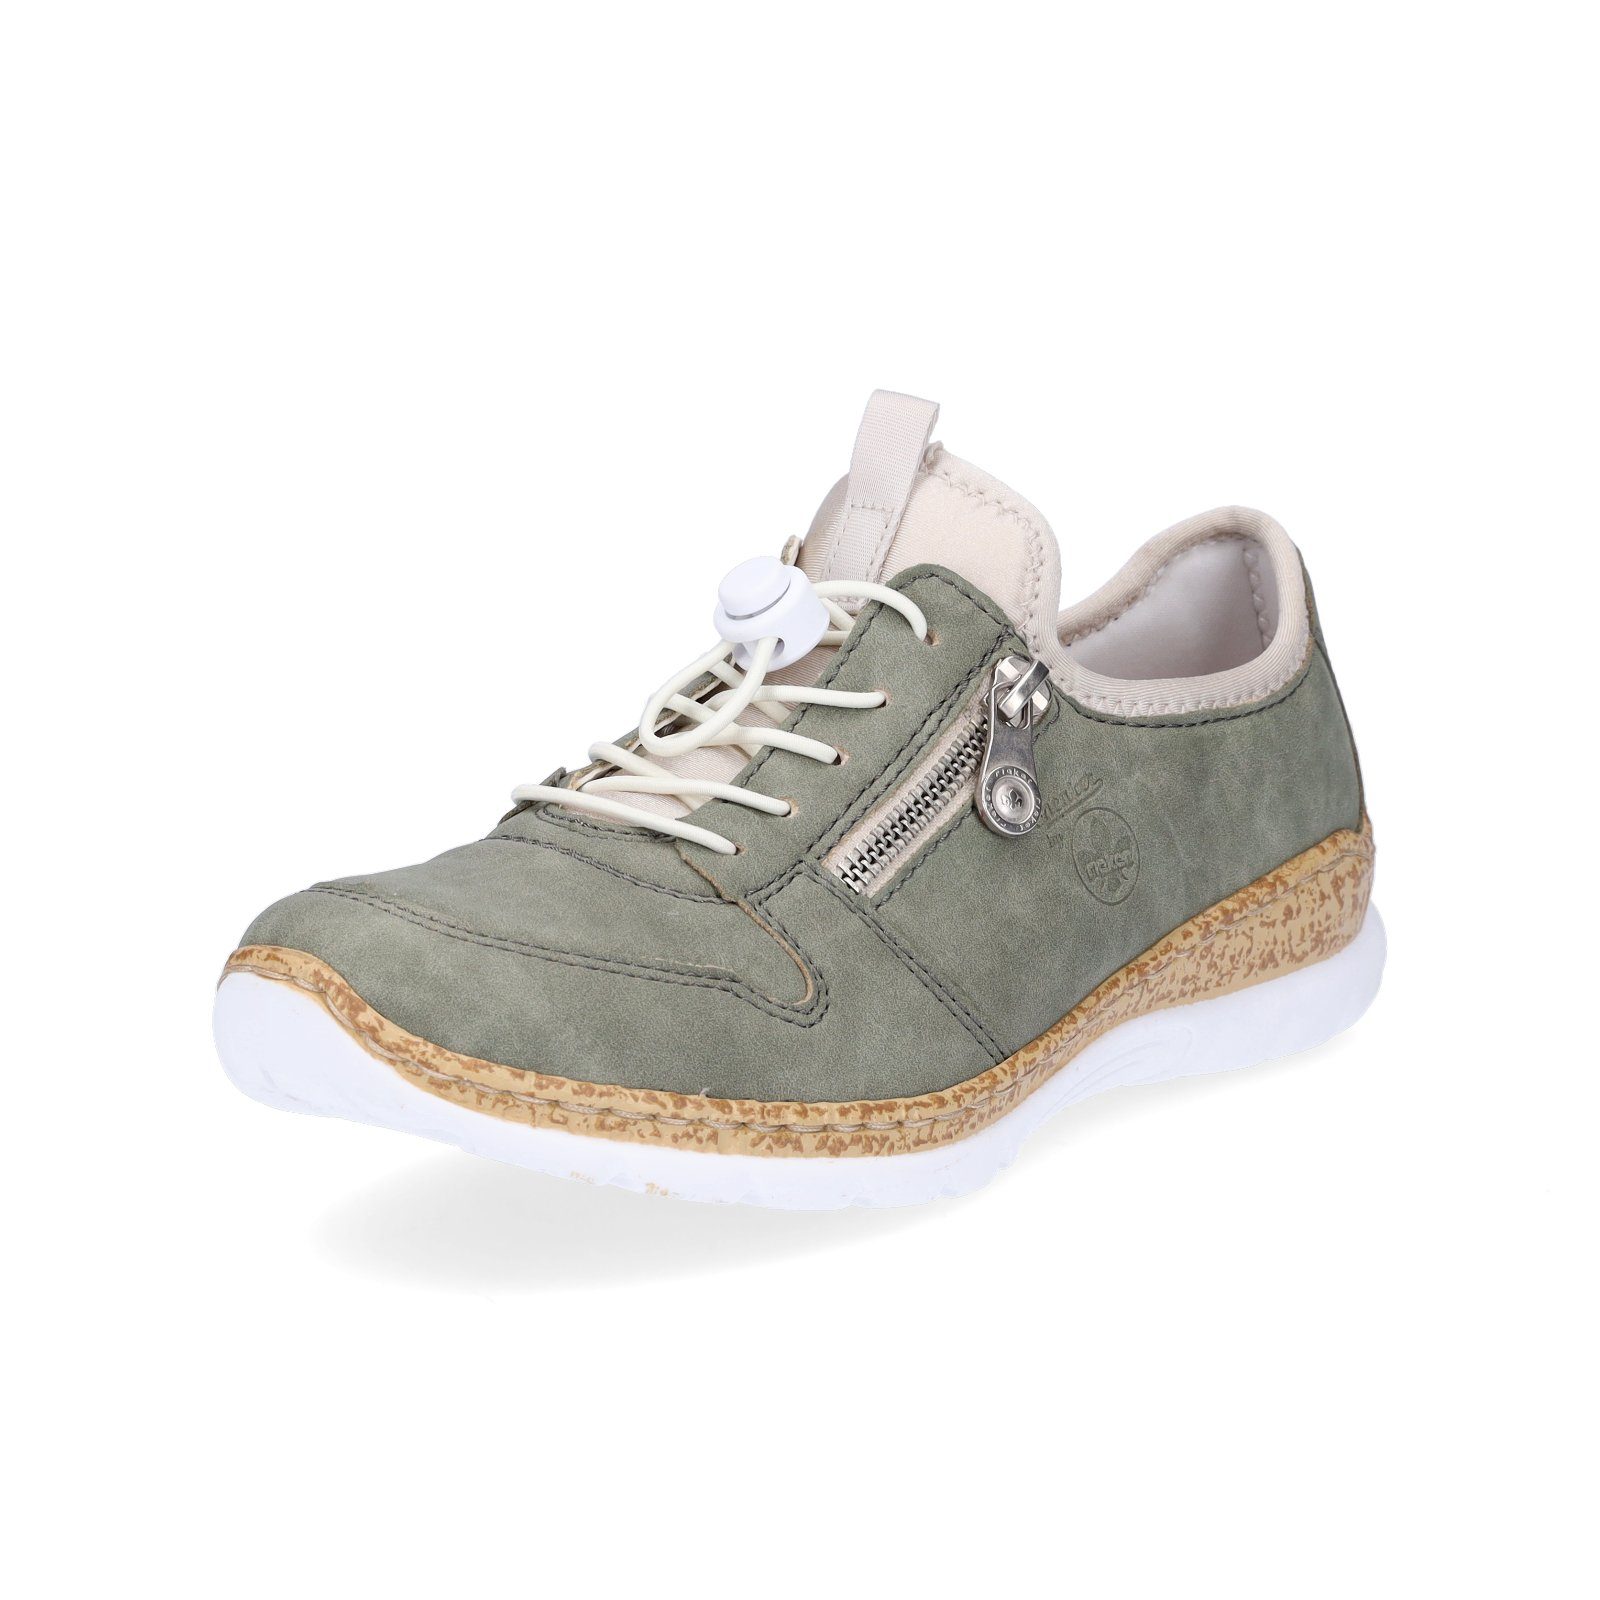 Rieker Slip-On Sneaker mit leichter Laufsohle, praktisch und sportlich,  leichter Allrounder, ideale Passform dank Gummizug